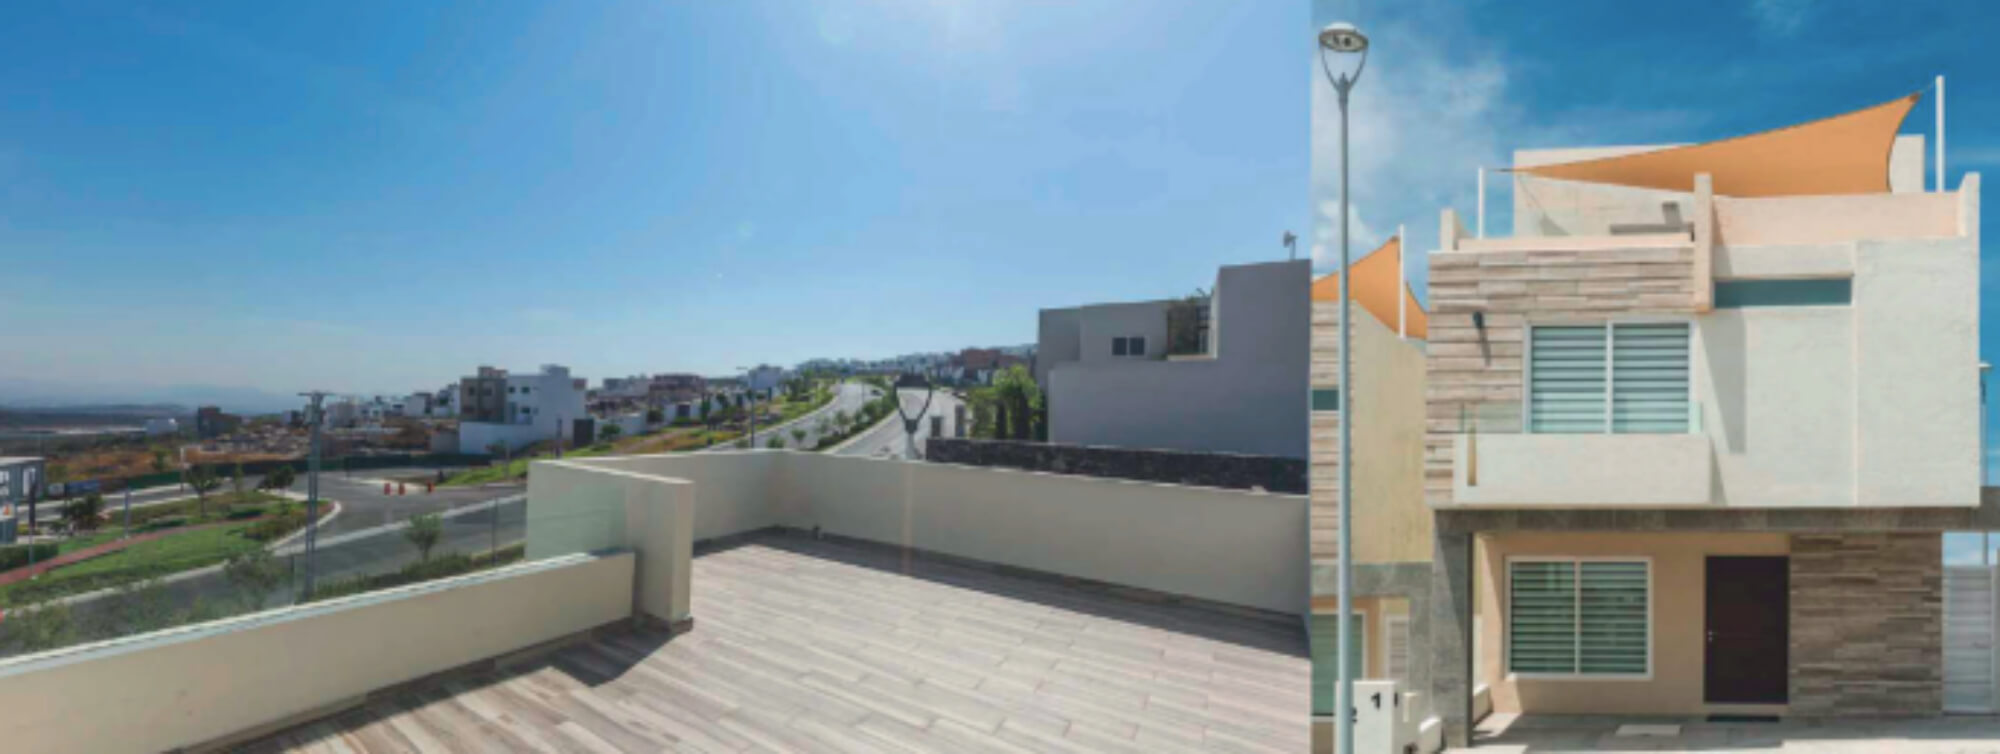 Residencia rooftop y Jardín, con ventanales, espacios amplios, pre-construcción, Zibata venta, Queretaro.